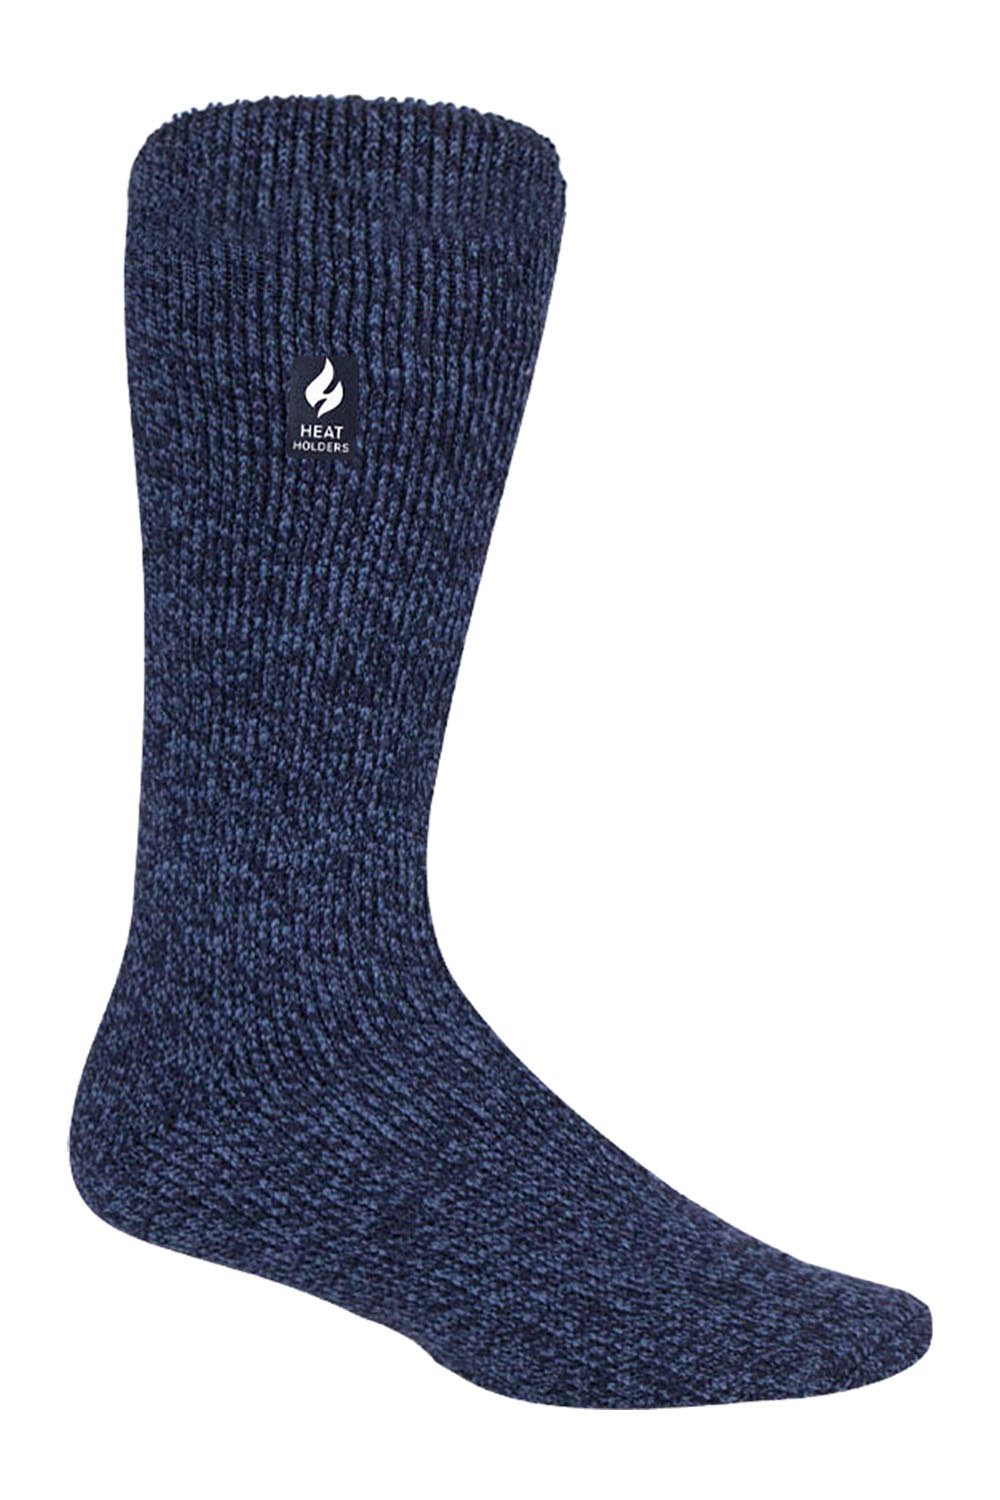 Mens Thick Original Thermal Socks -